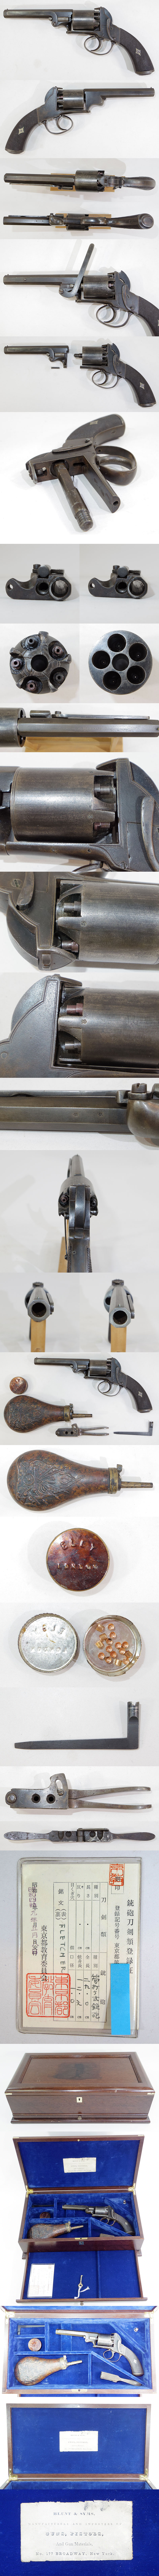 フレッチャー　ベントレータイプ（5連発リボルバー）管打銃各部分画像